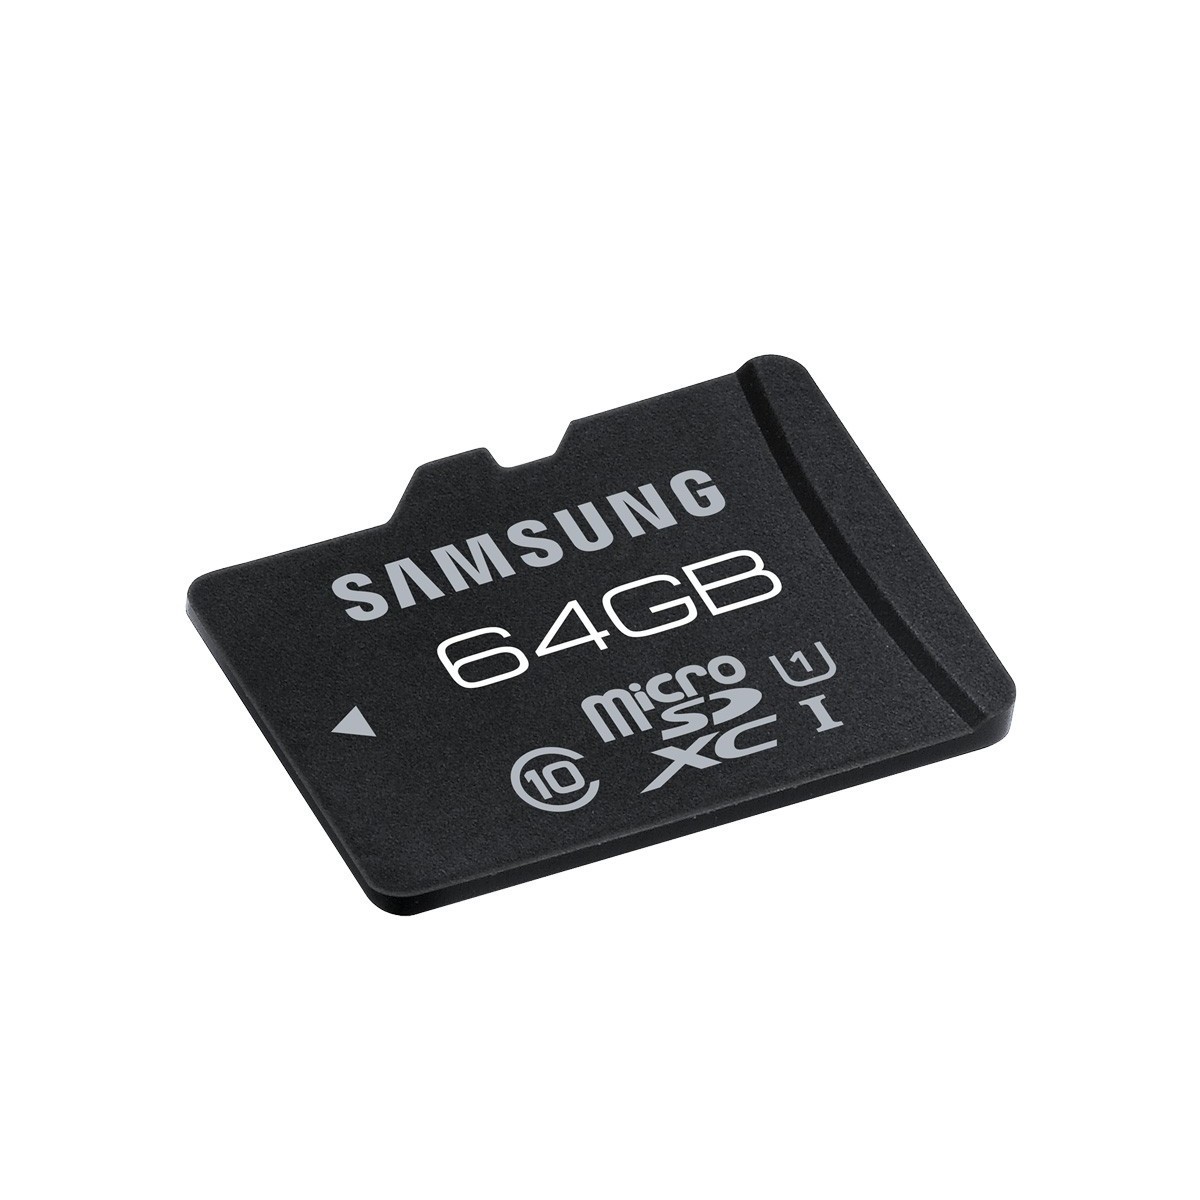 Стоимость микро. Микро СД самсунг 32u. 32гб карта памяти Samsung MICROSD. Флешка микро СД 64. Флешка 64 ГБ микро SD.